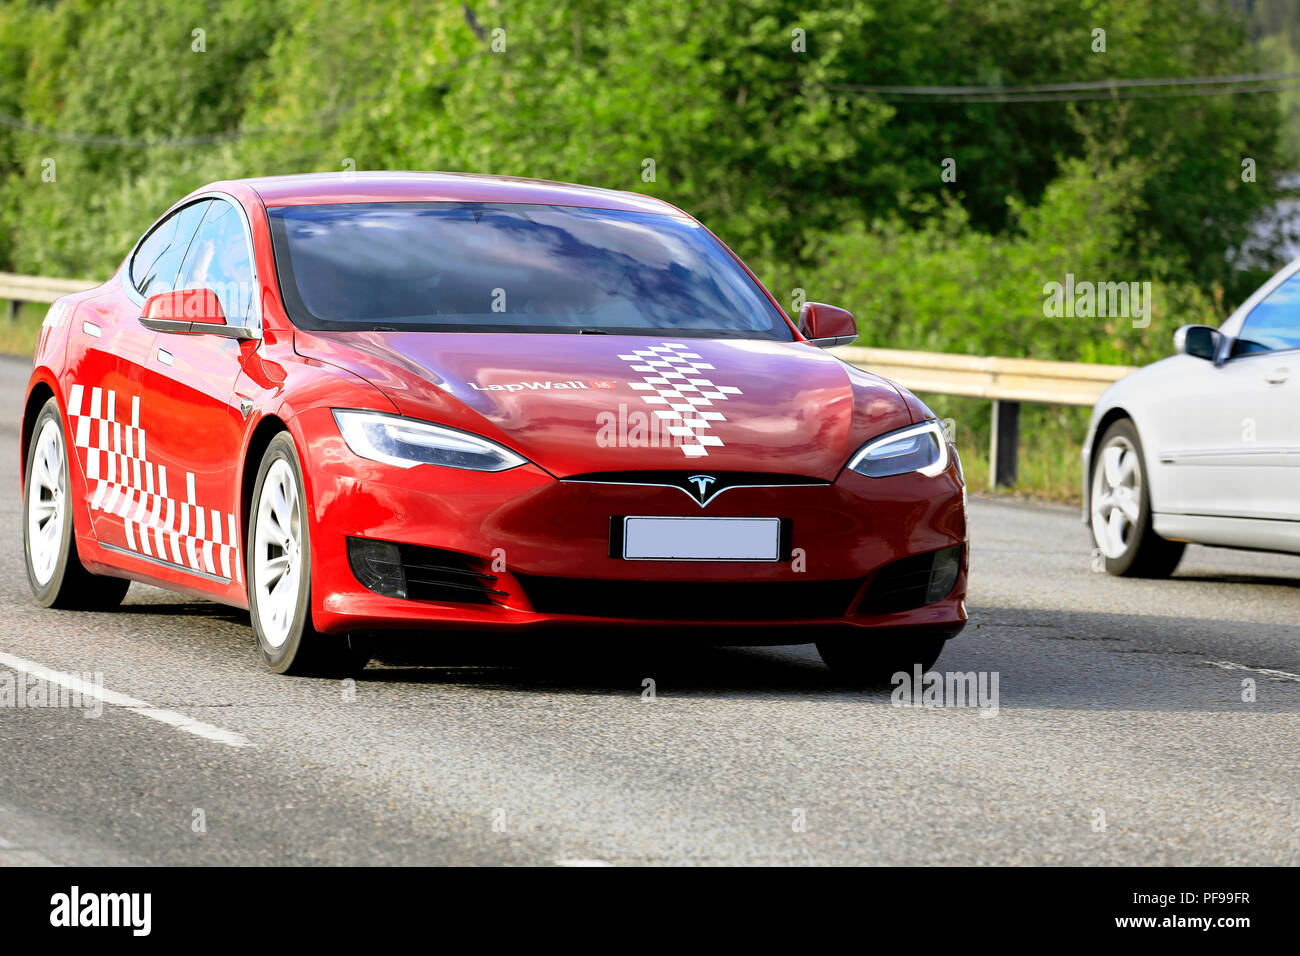 Jyväskylä, Finlandia - Junio 15, 2018: rojo y blanco modelo Tesla S coche eléctrico del nuevo diseño exterior en velocidad en la carretera entre el tráfico en el verano. Foto de stock